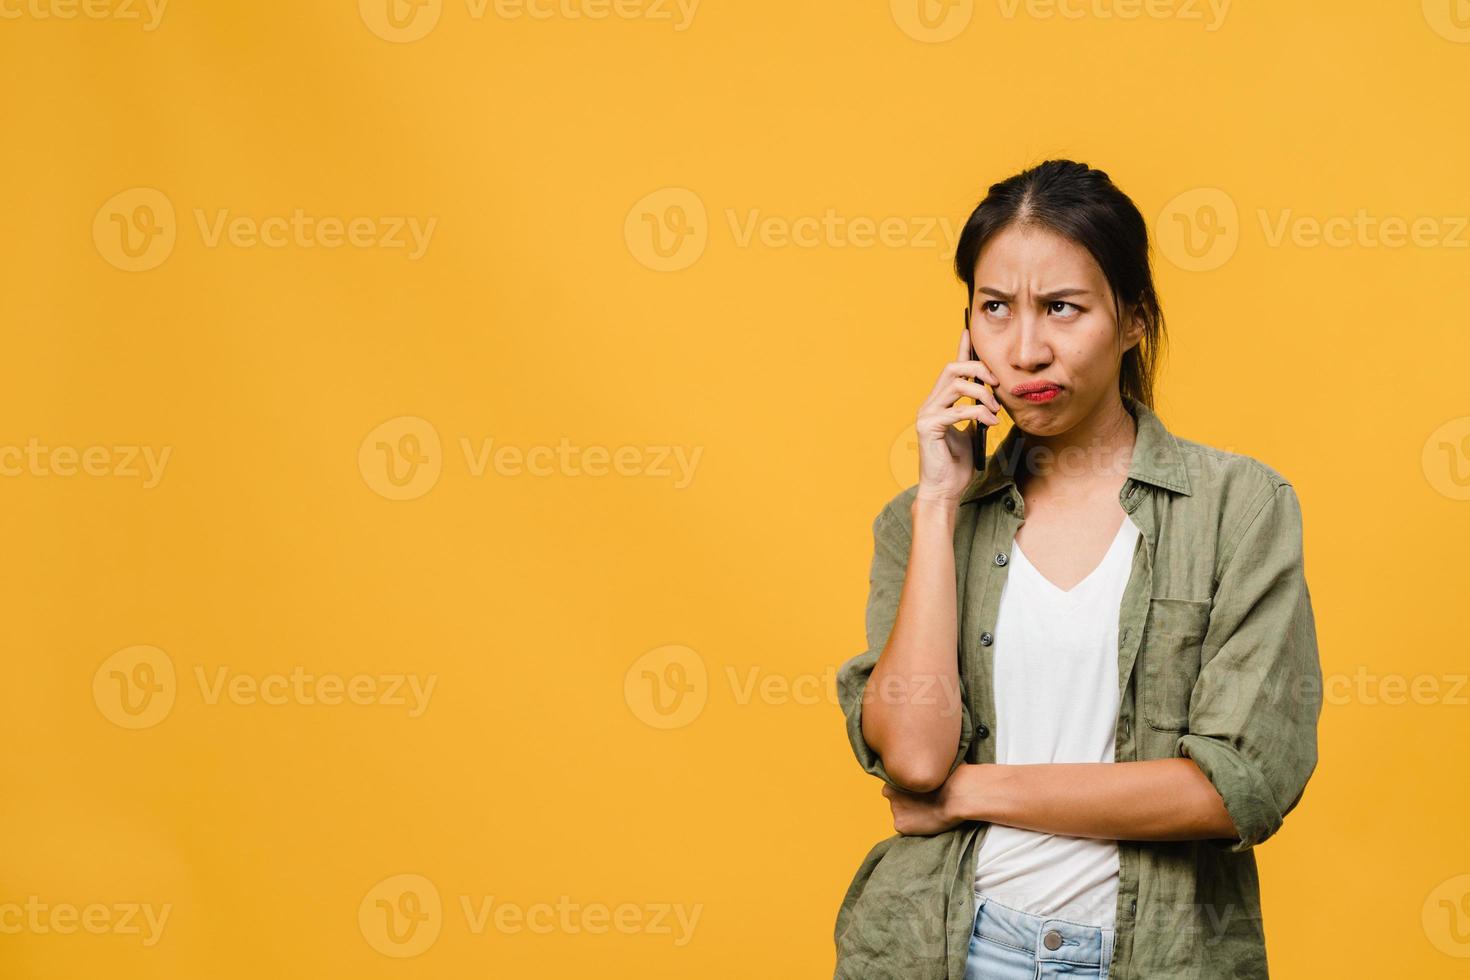 jovencita asiática habla por teléfono con expresión negativa, gritos emocionados, gritos emocionales enojados en ropa casual y se para aislado sobre fondo amarillo con espacio de copia en blanco. concepto de expresión facial. foto